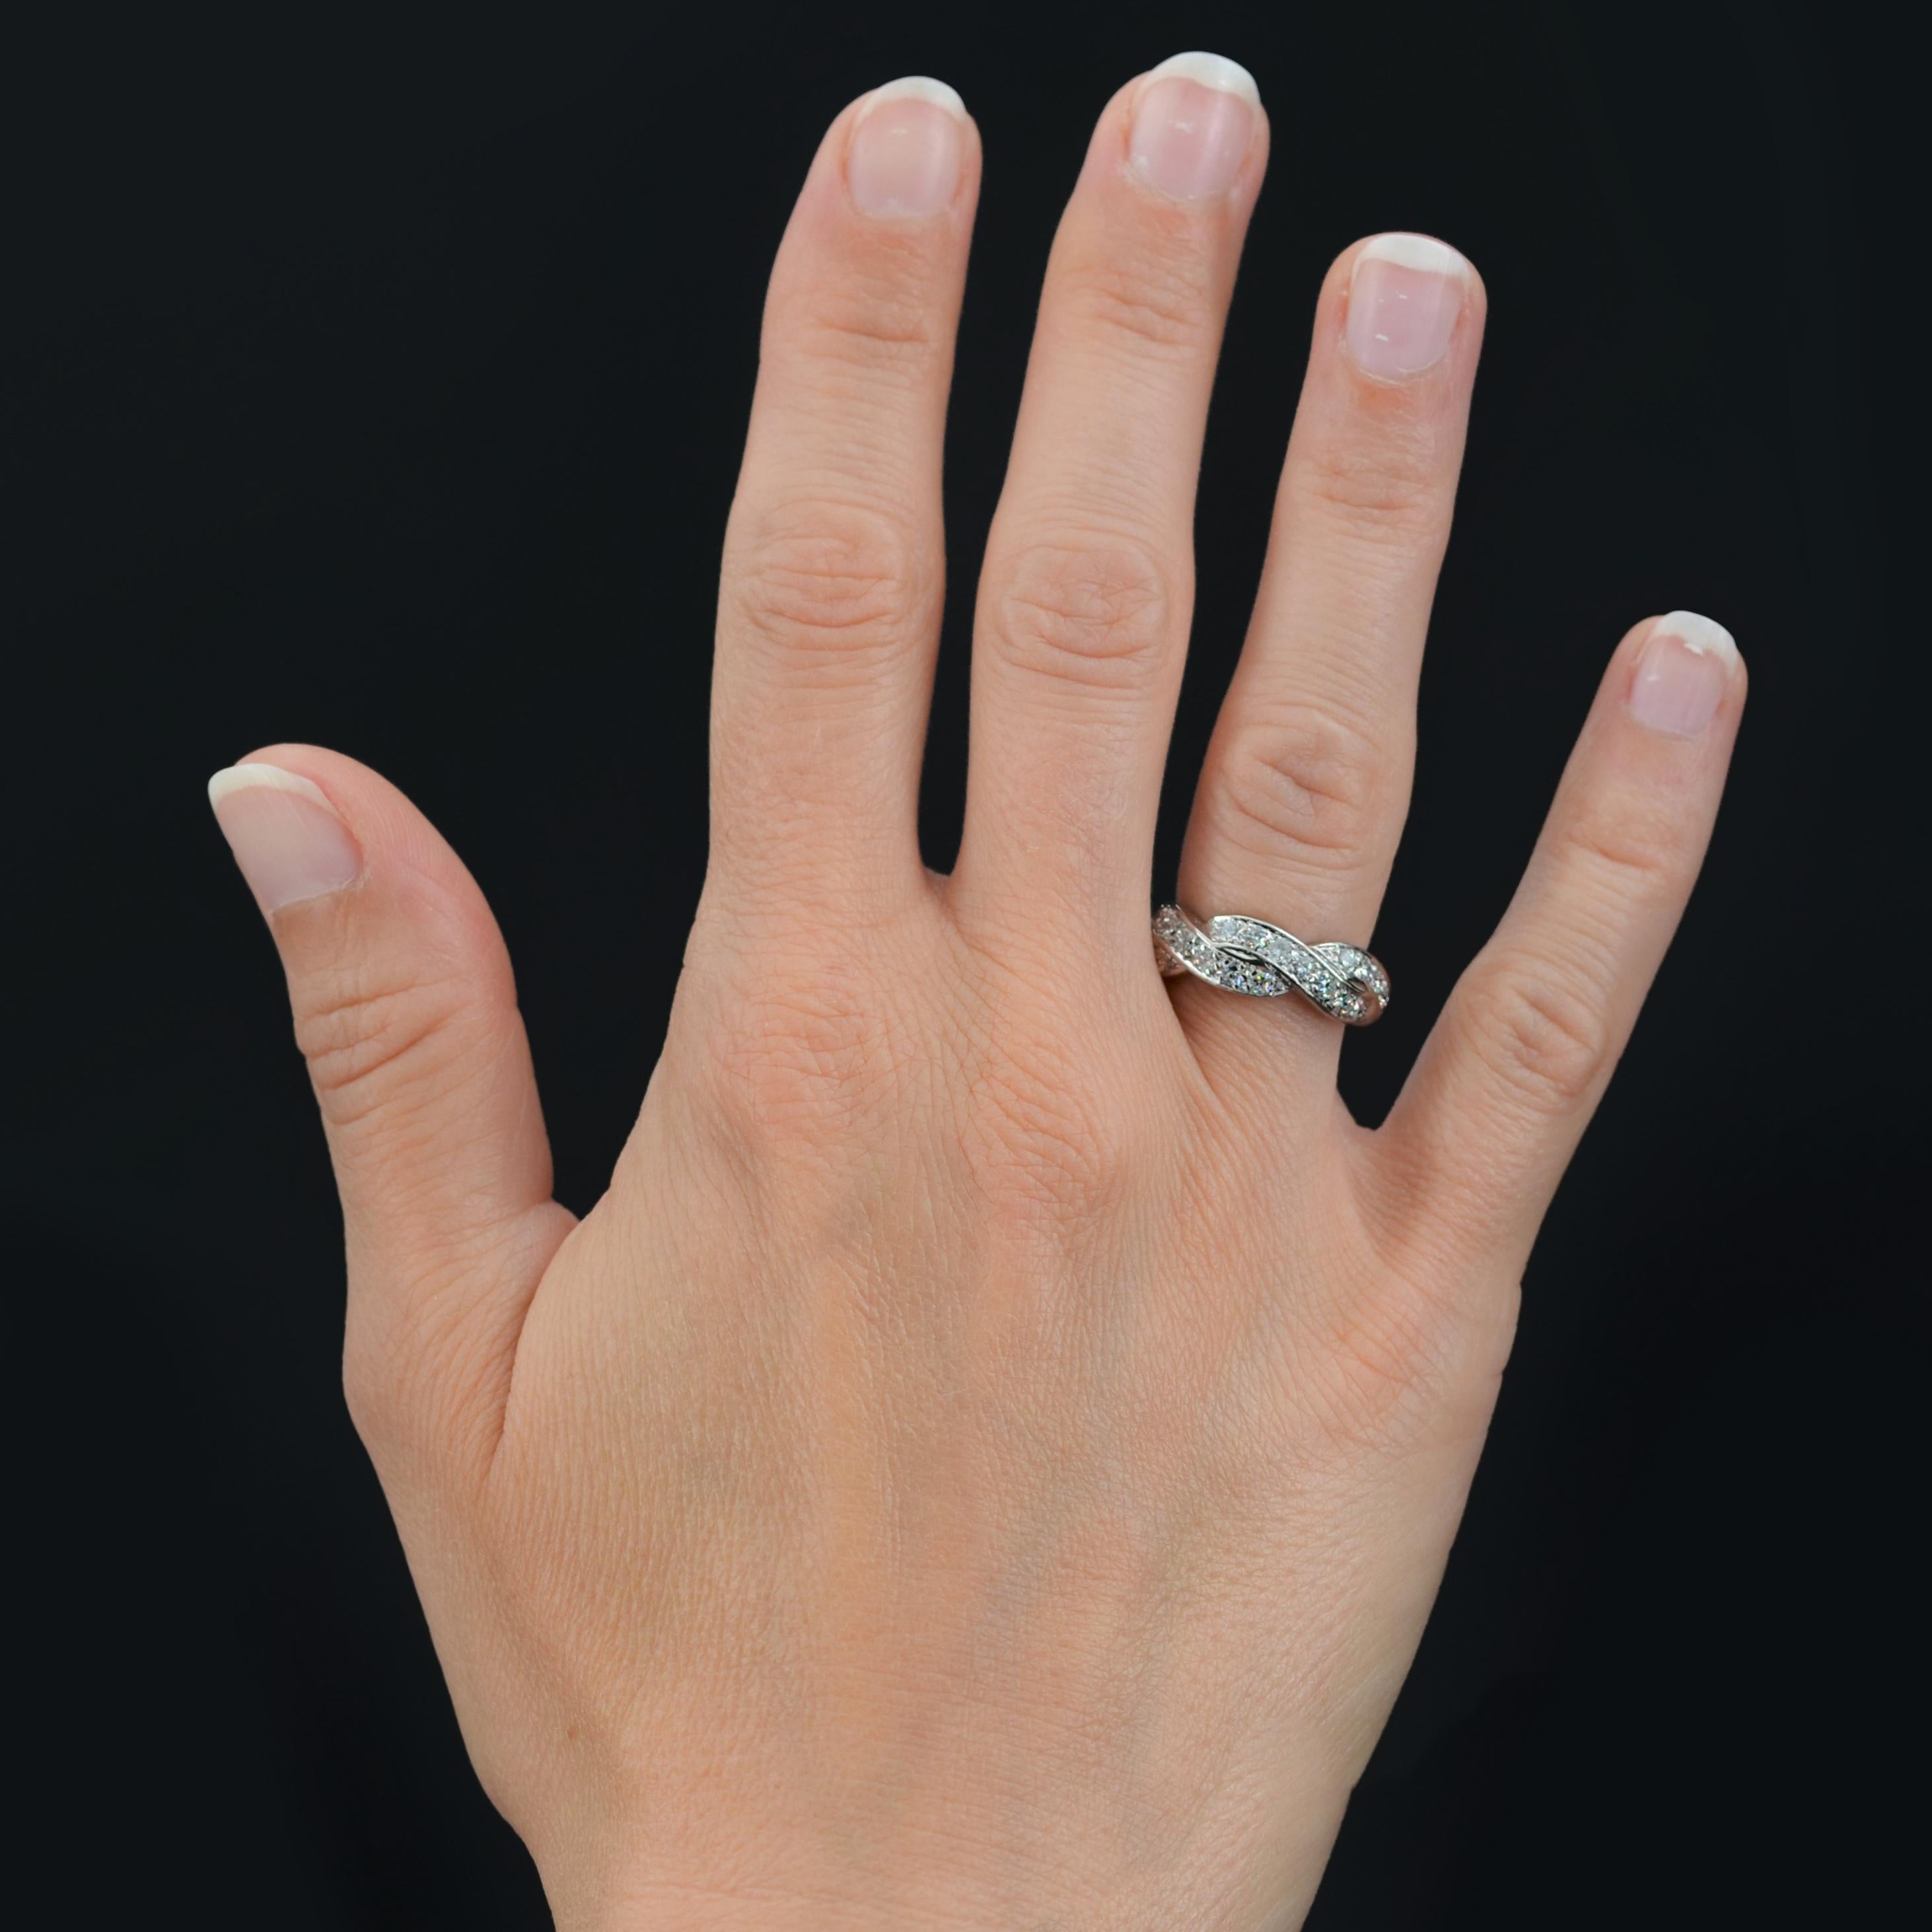 Ring aus 18 Karat Weißgold, Adlerkopfpunze.
Wunderschönes und seltenes Modell eines Retro-Traurings, das aus zwei ineinander verschlungenen Ringen besteht, die auf allen Seiten mit Diamanten im Brillantschliff besetzt sind.
Gesamtgewicht der